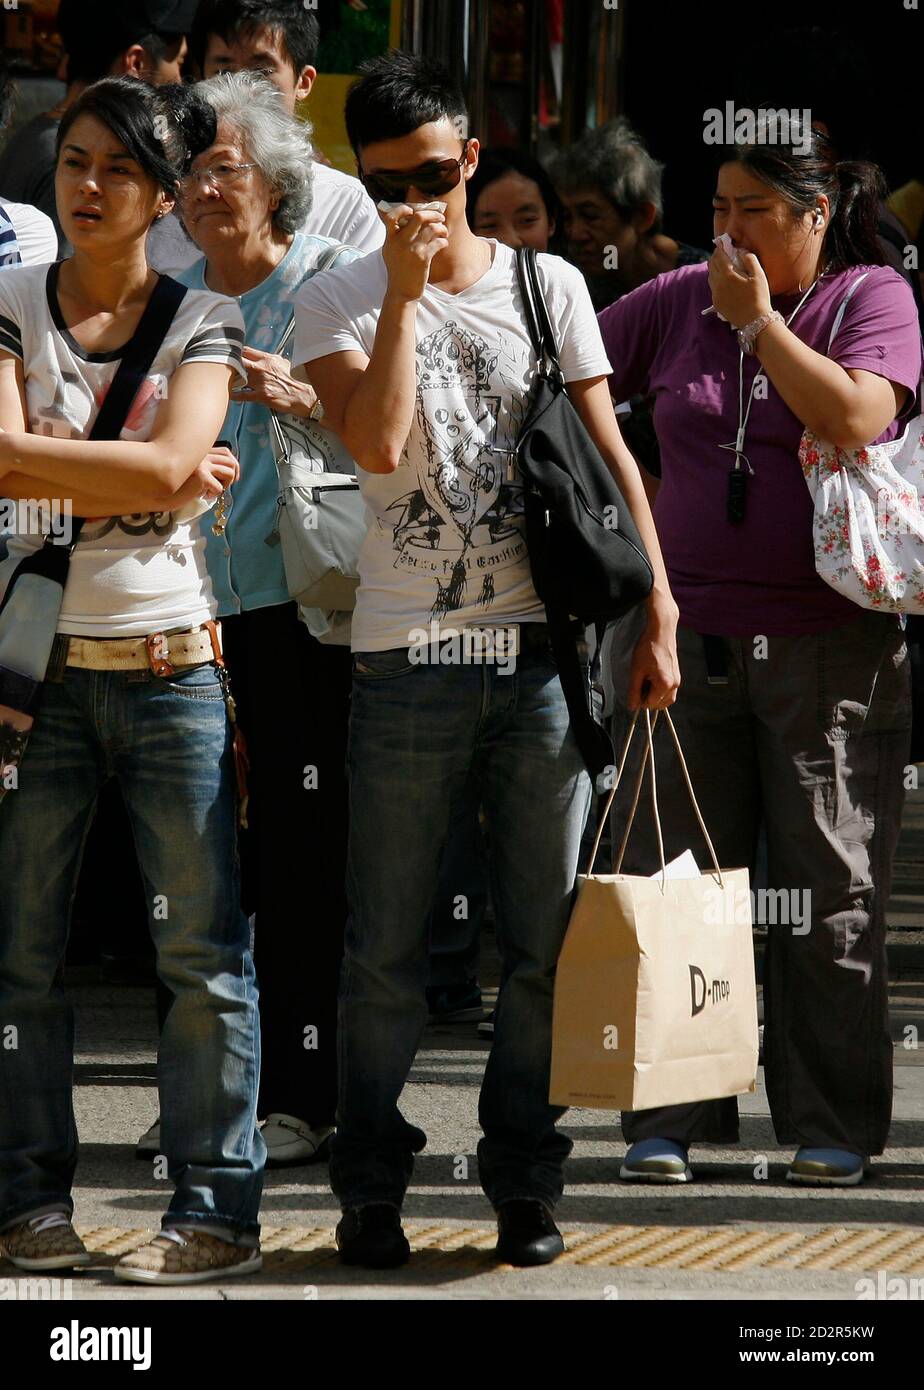 Fußgänger decken ihre Nase und Mund, während sie darauf warten, eine Straße in Hong Kong Einkaufsviertel Causeway Bay zu überqueren, 15. Juli 2009. Luftverschmutzung in Hongkong hat das Sechsfache sprang in den vergangenen vier Jahren, aber Experten sagen lokale Fahrzeuge mehr Schuld als Smog eingeblasen vom südlichen China Herstellung Gürtel sind, eine Zeitung berichtete am Mittwoch.   REUTERS/Bobby Yip (CHINA-Politik-BUSINESS-Umgebung) Stockfoto